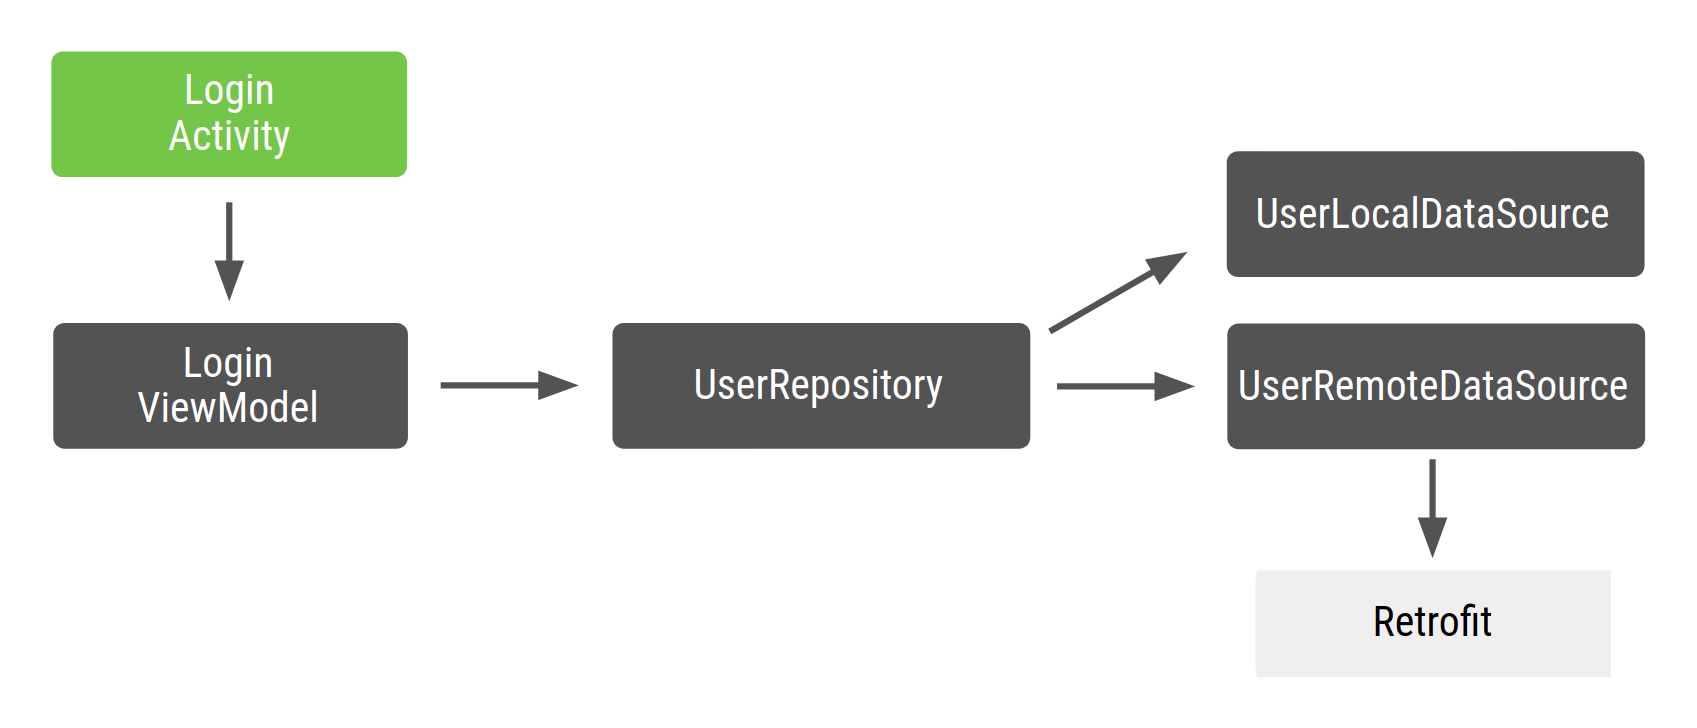 LoginActivity phụ thuộc vào LoginViewModel, LoginViewModel phụ thuộc vào UserRepository, UserRepository phụ thuộc vào UserLocalDataSource và UserRemoteDataSource, UserLocalDataSource và UserRemoteDataSource phụ thuộc vào Retrofit.